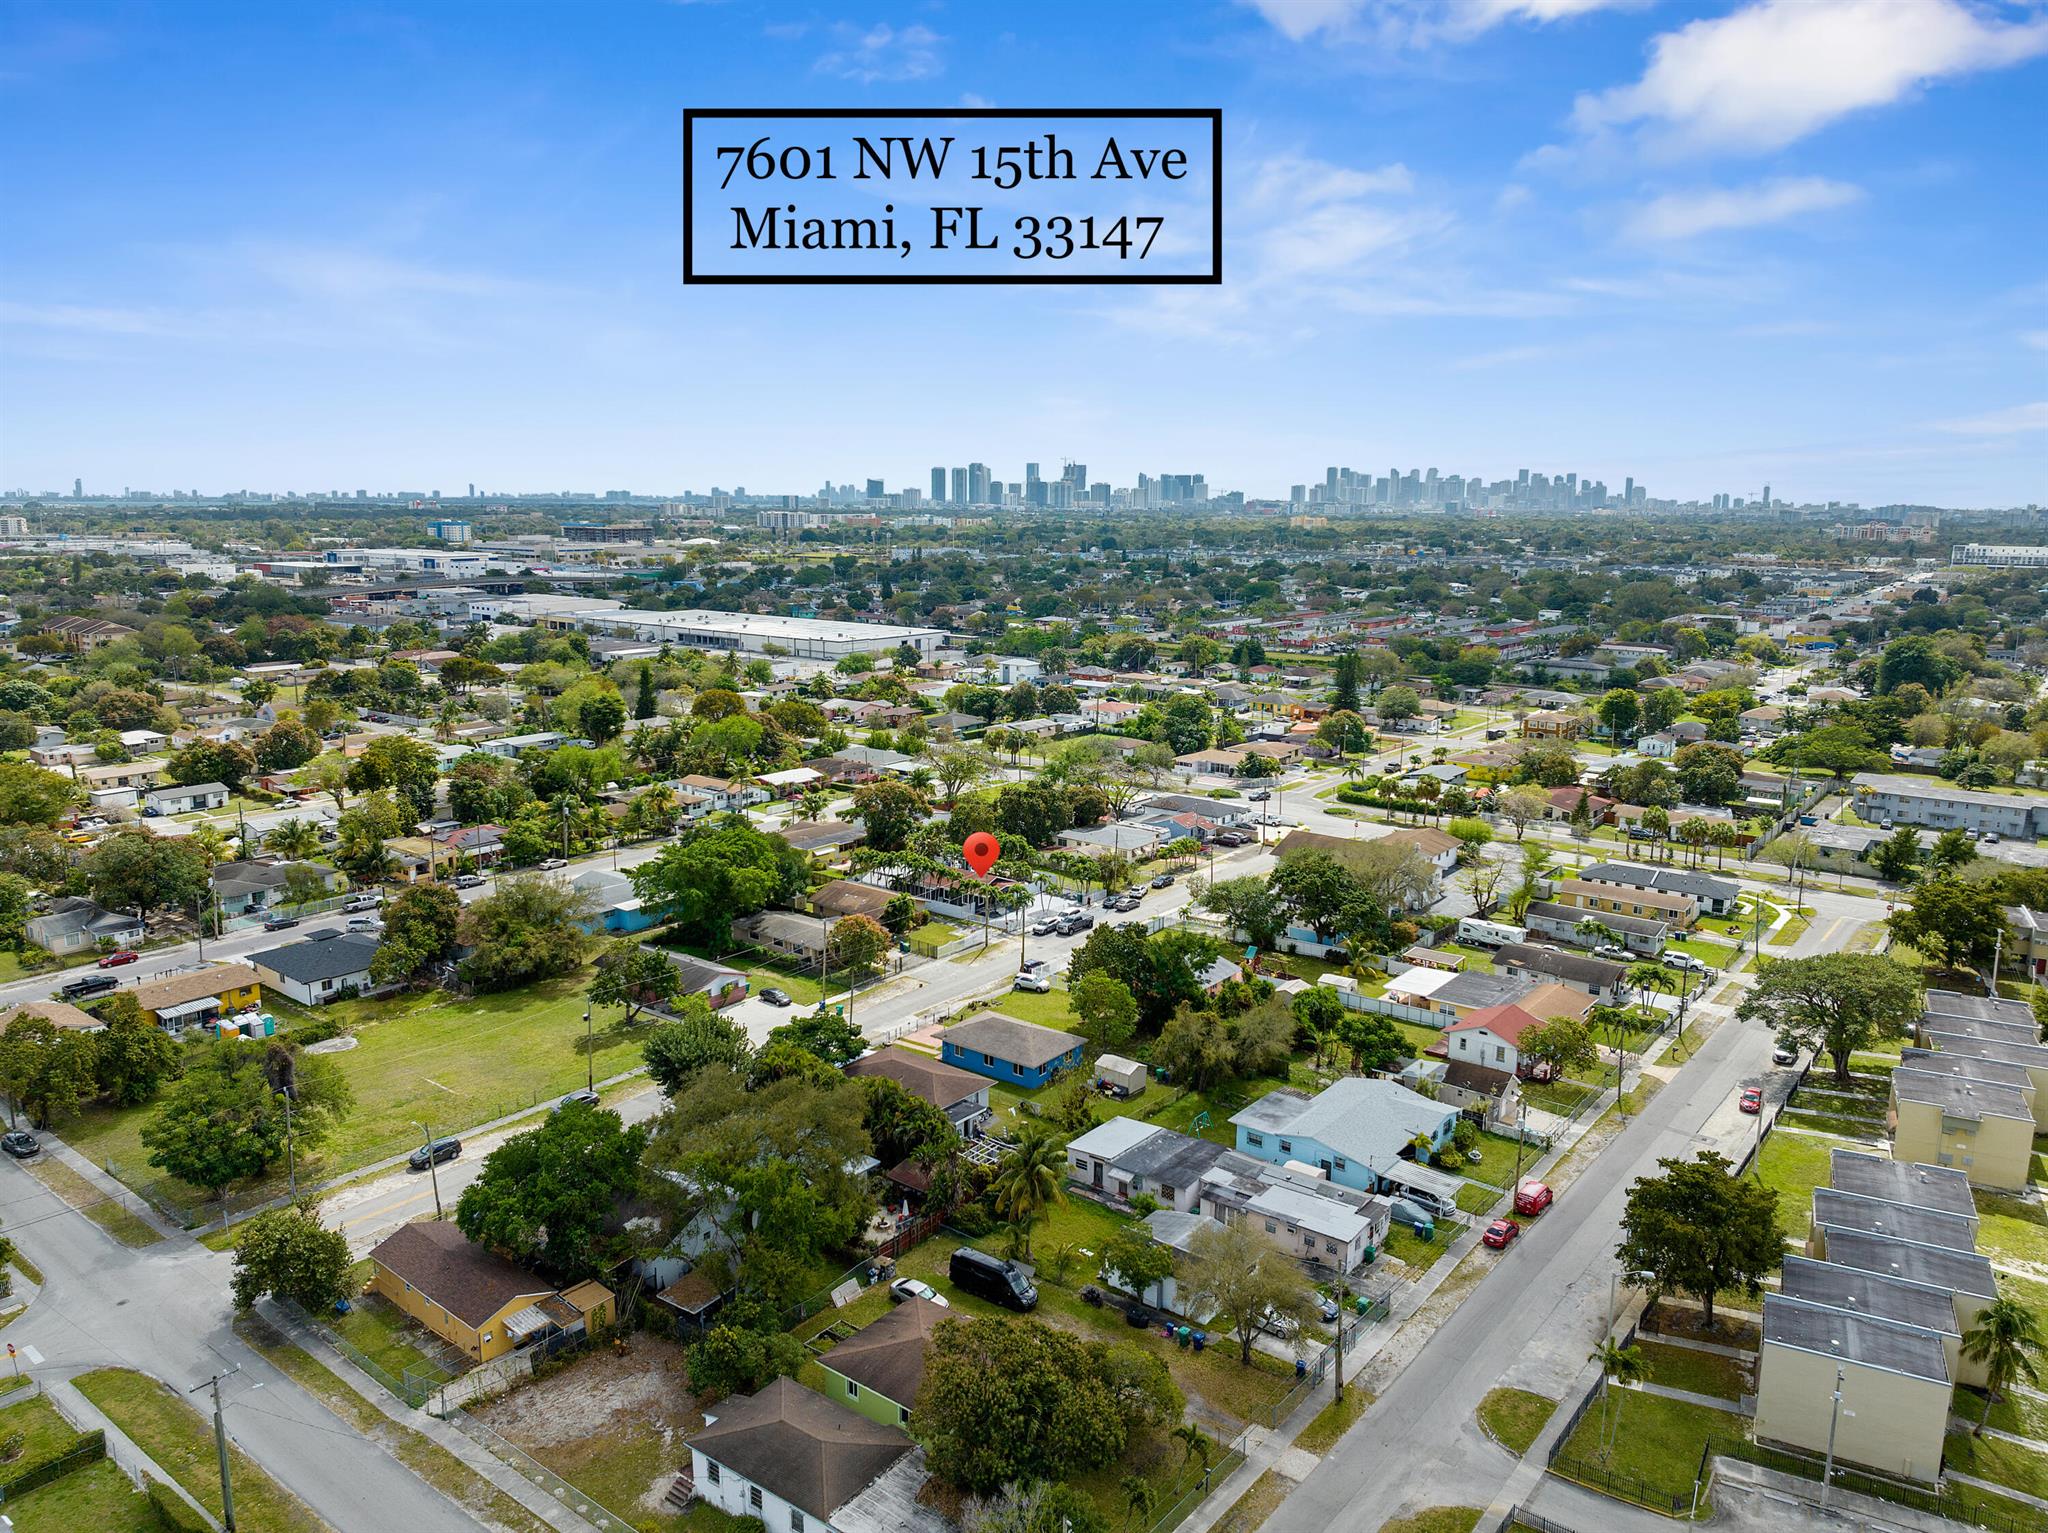 View Miami, FL 33147 house